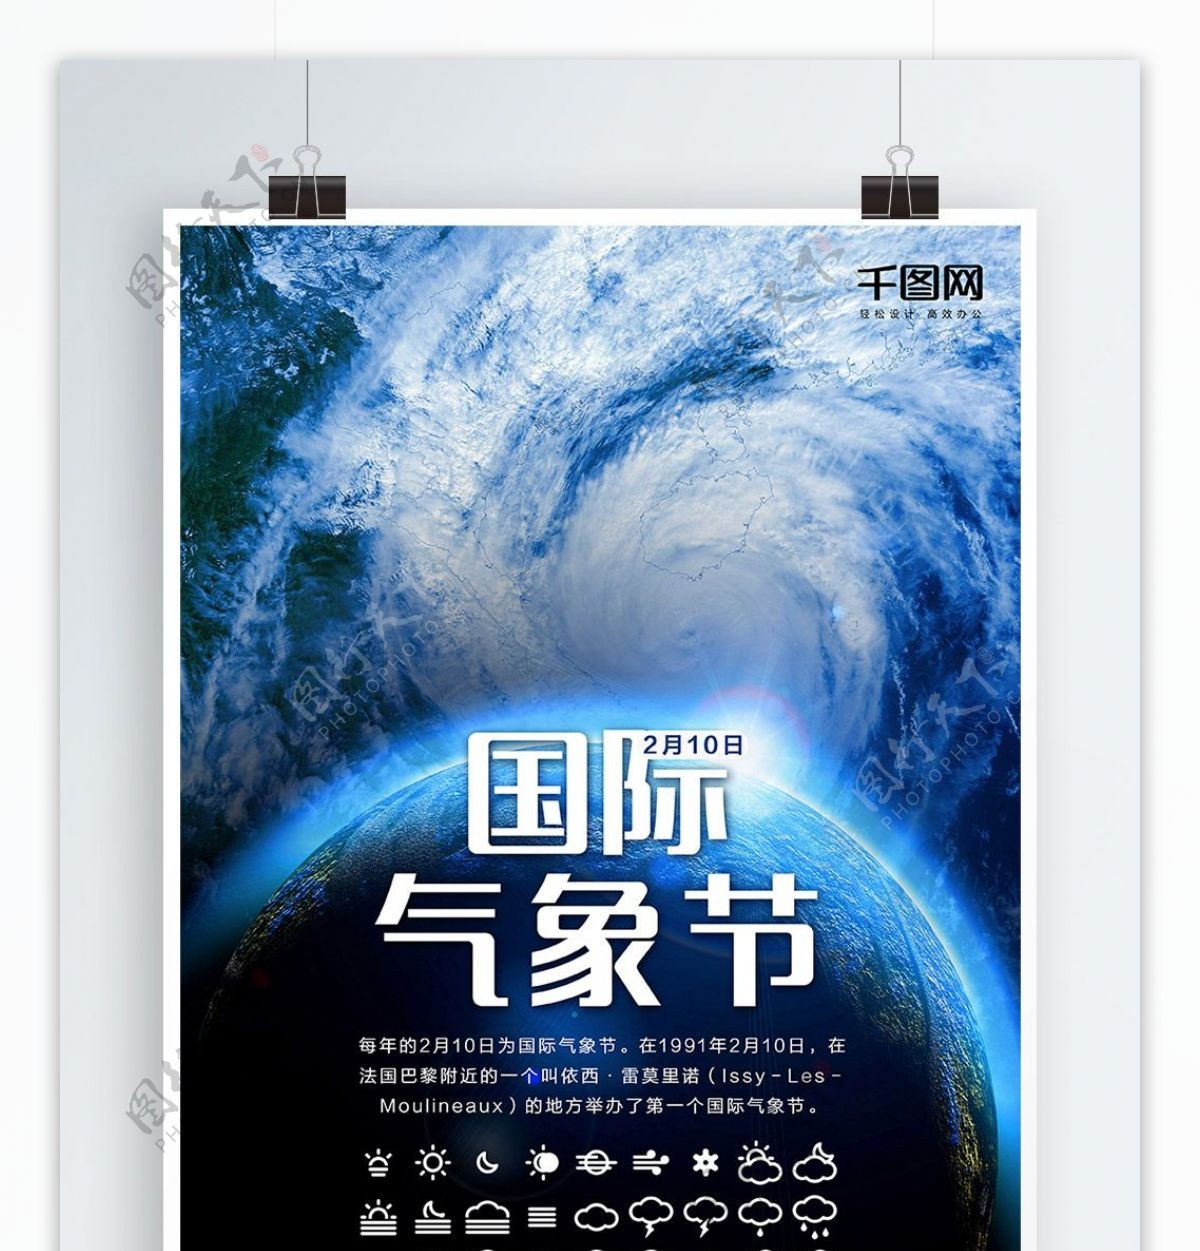 国际气象节地球旋风海报